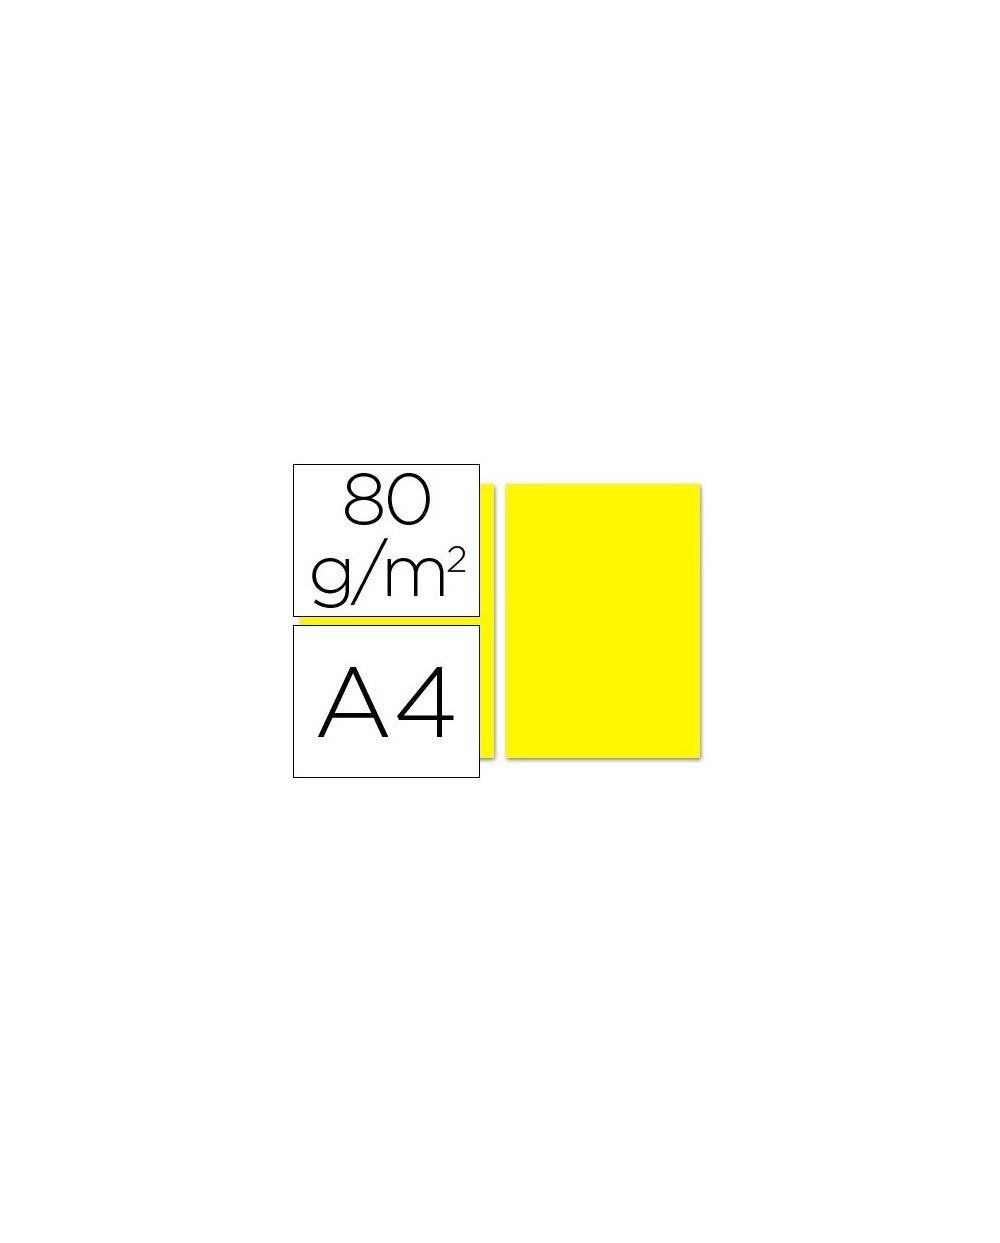 Papel color liderpapel a4 80g m2 amarillo paquete de 100